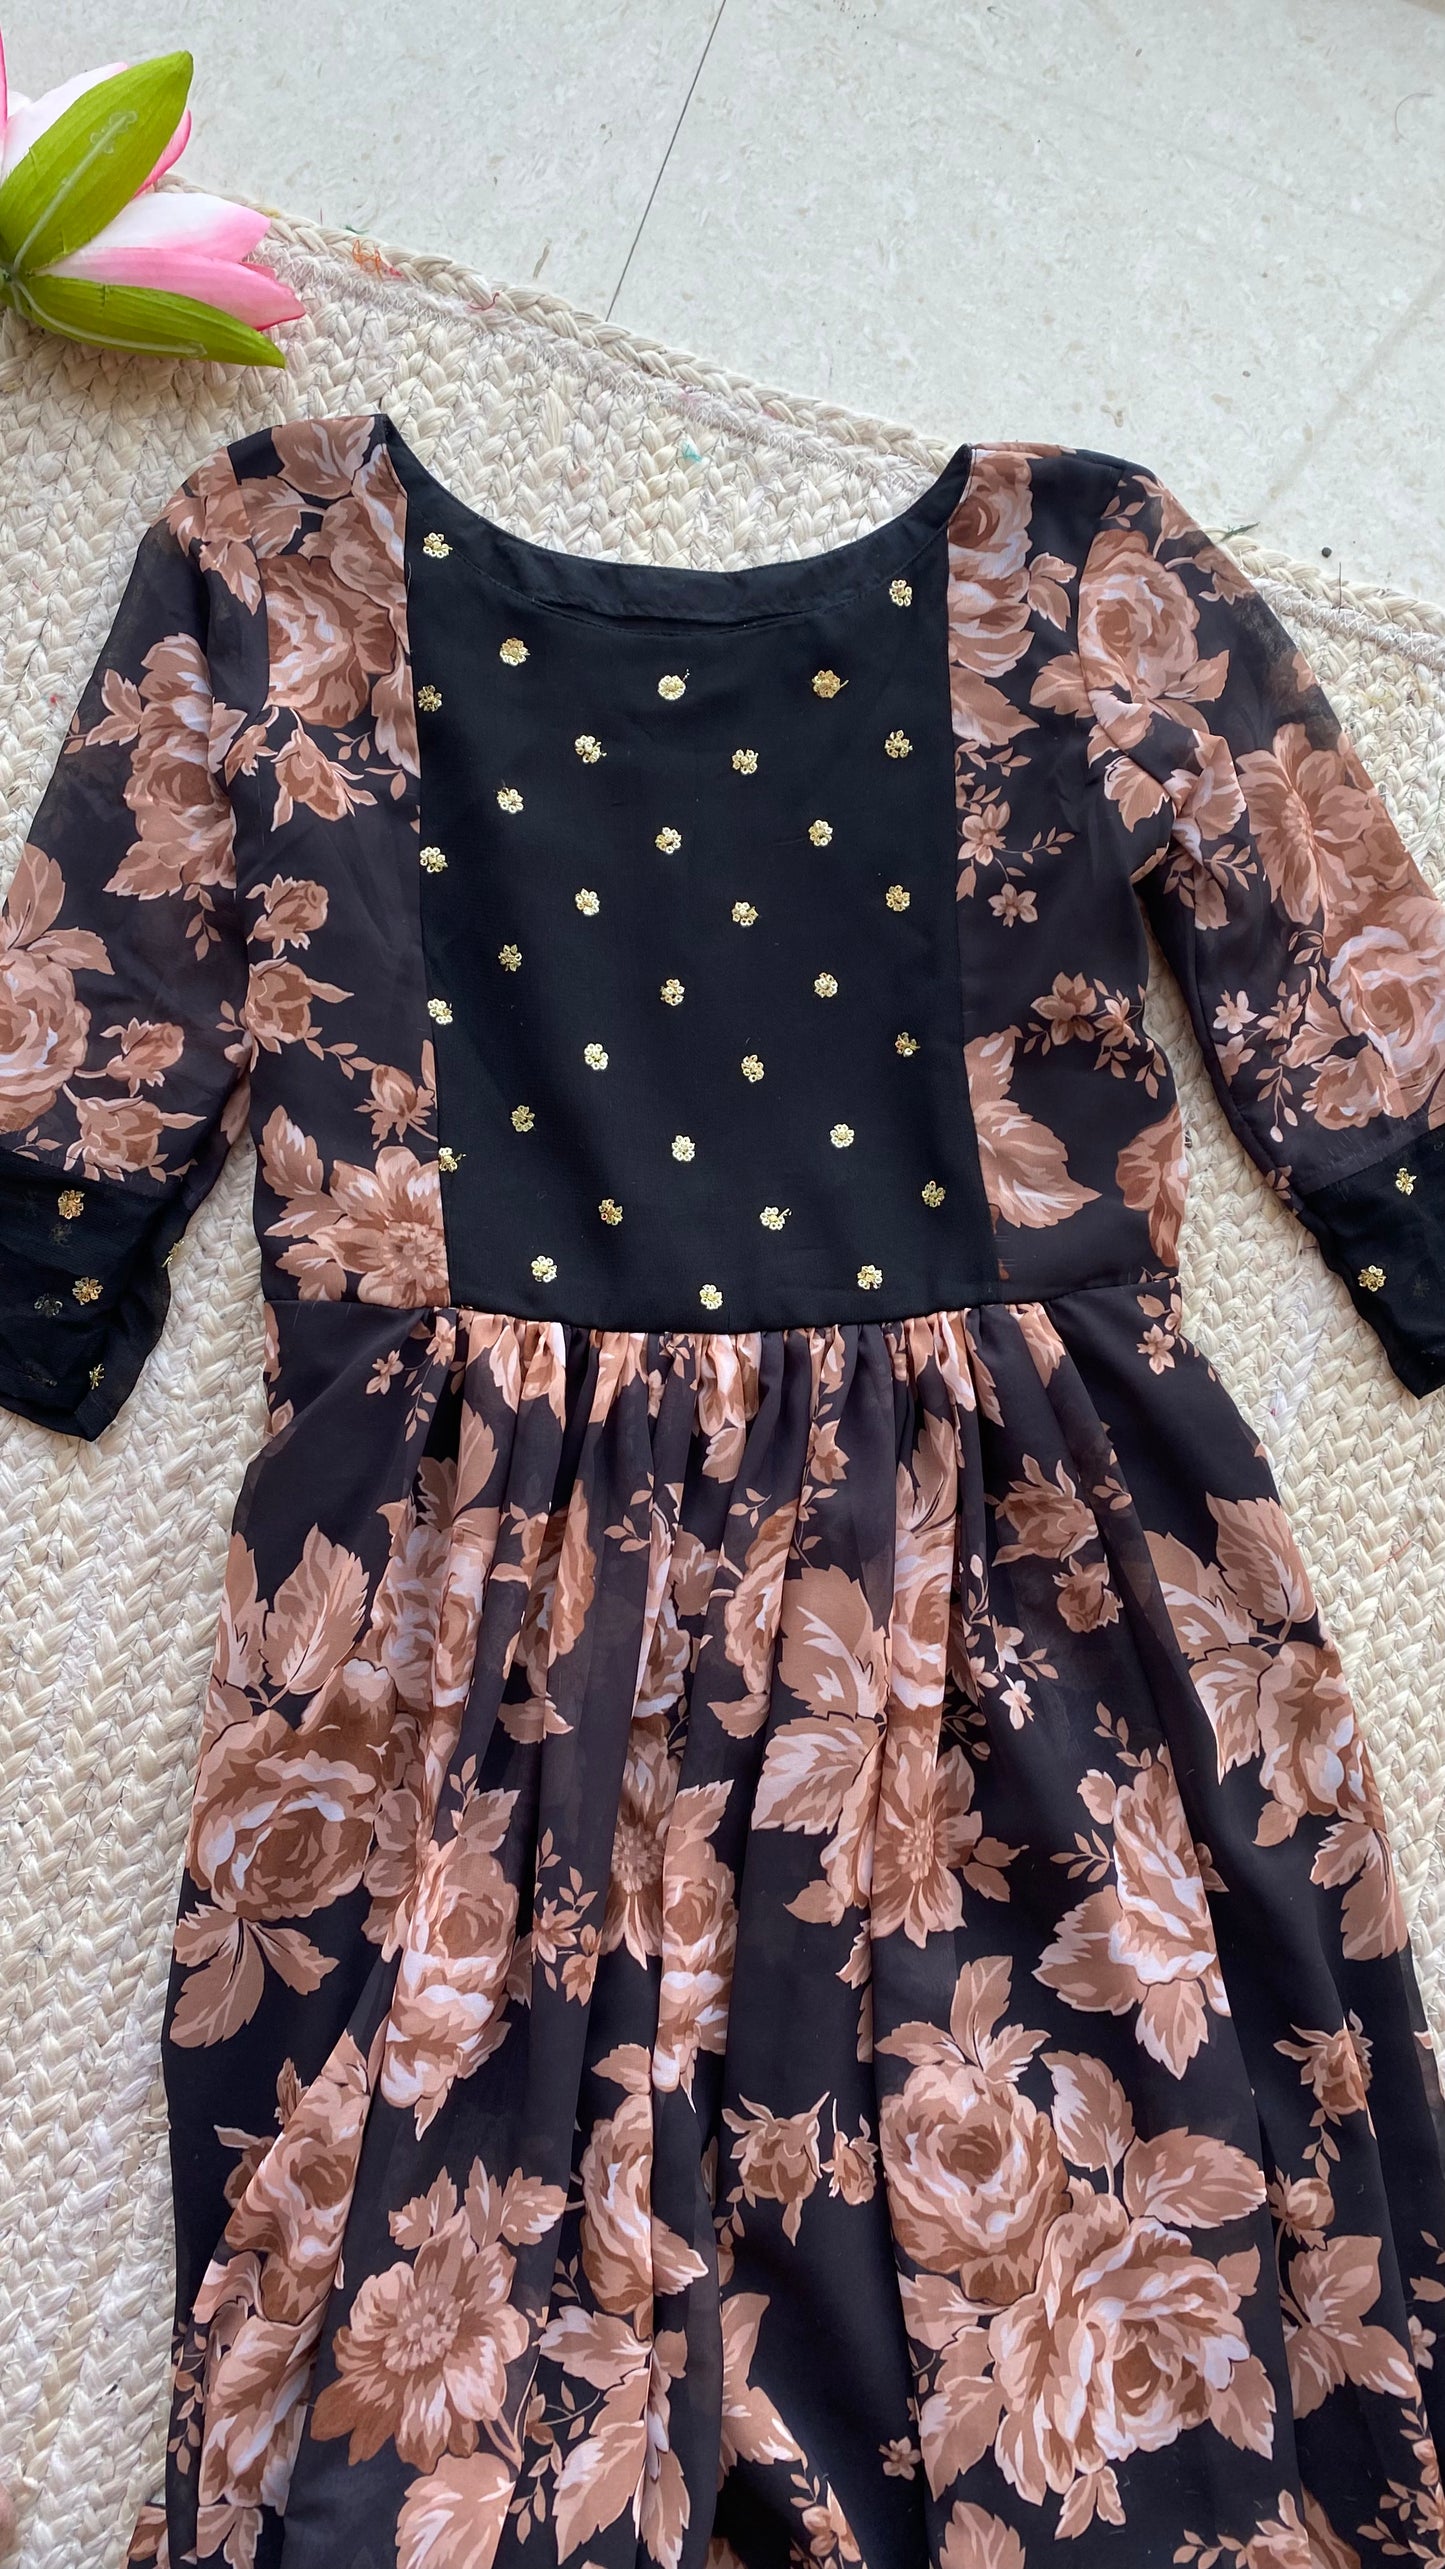 Black floral georgette full length dress